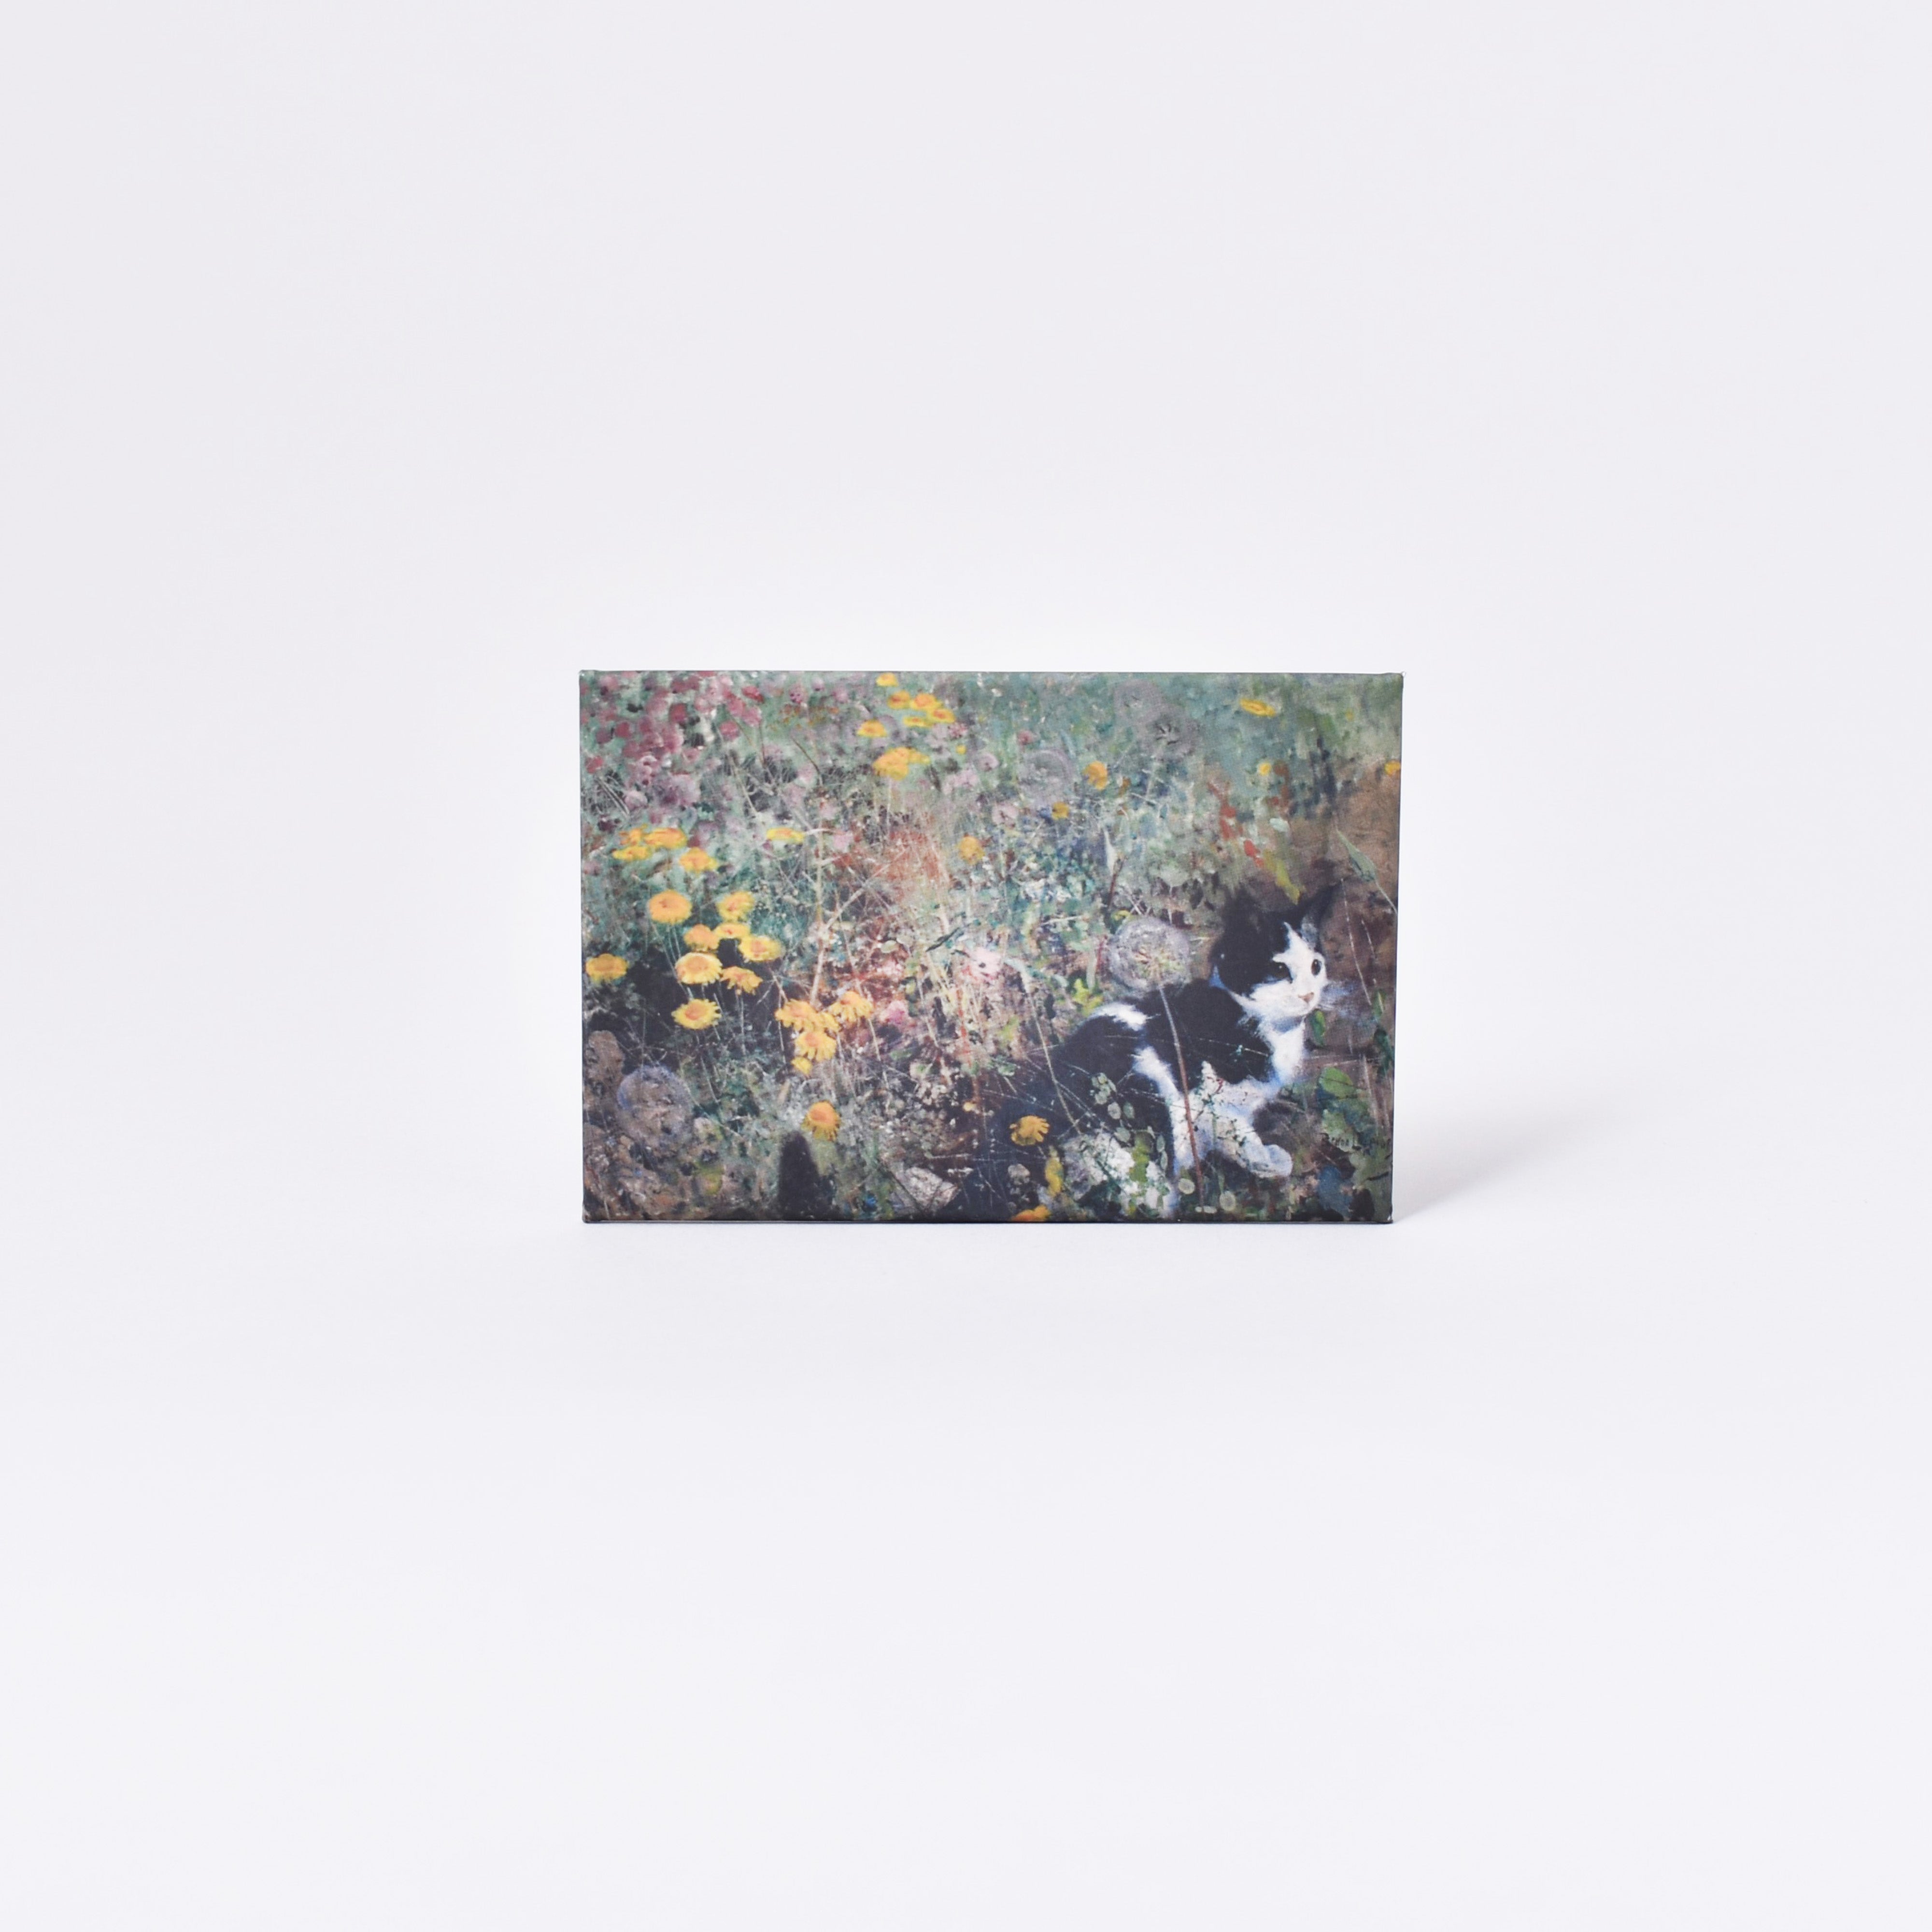 Rektangulär magnet med Bruno Liljefors målning Katt på blomsteräng från Nationalmuseum 